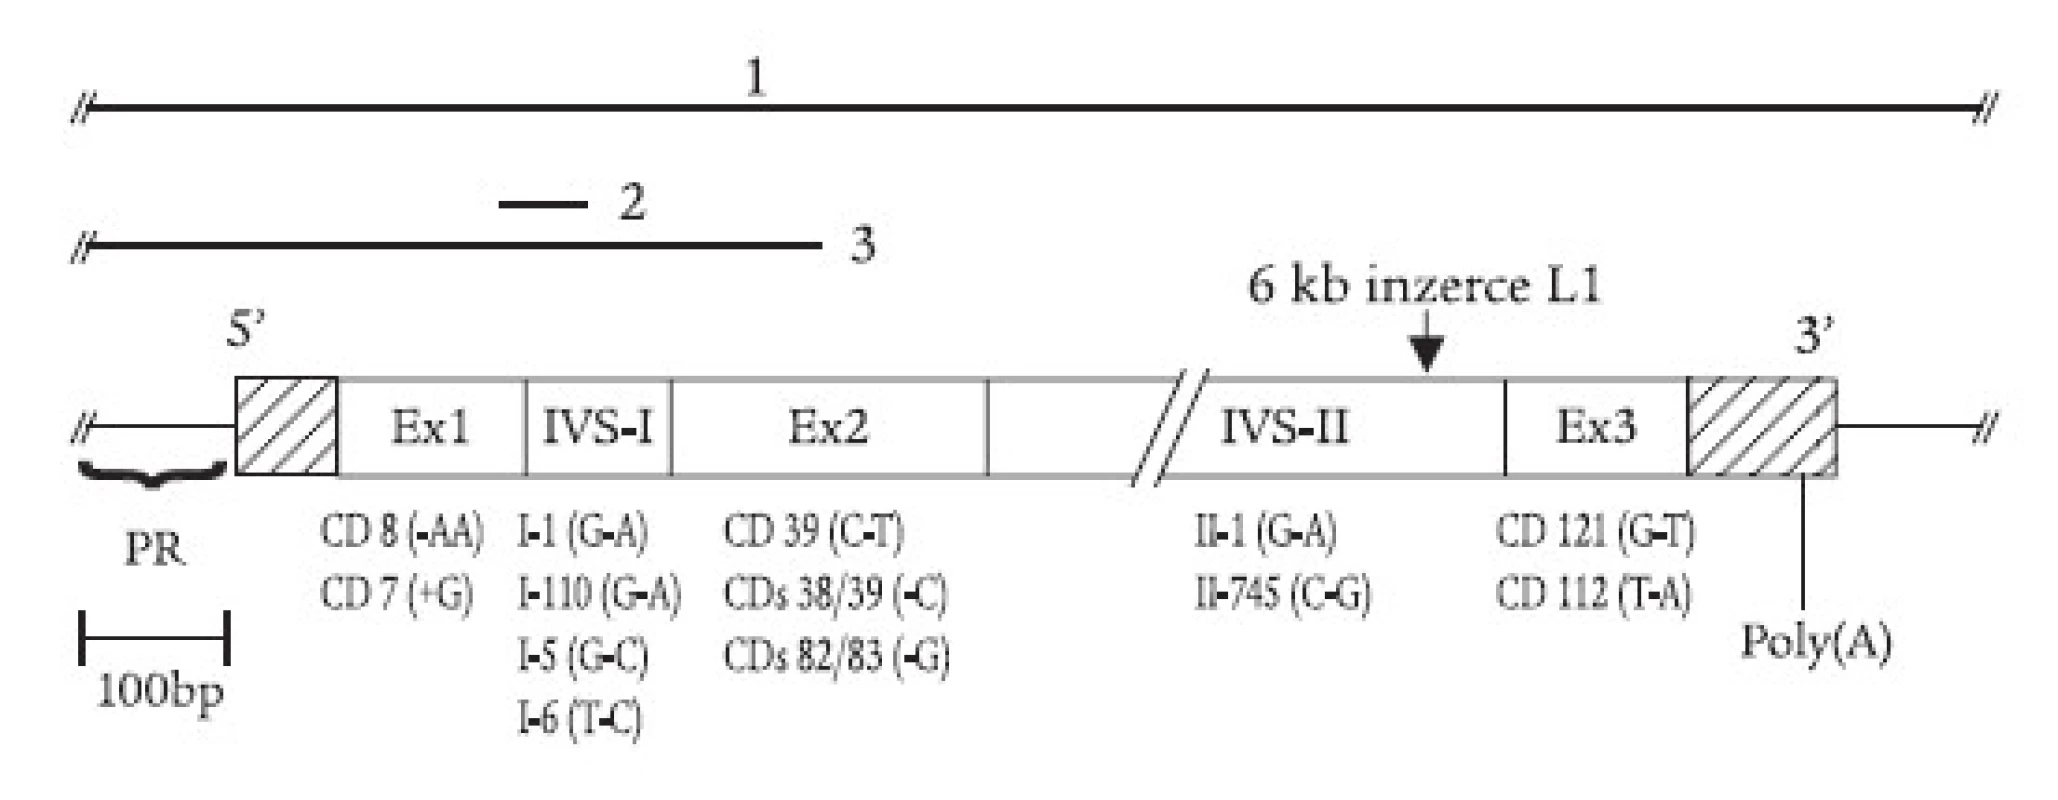 Mutace β-globinového genu zjištěné v ČR a SR zahrnují delece (úsečky nad genem vyznačují deletované úseky DNA: 1. tzv. Sicilská δβ-talasemie; 2. tzv. -44 nukleotidová delece; 3. tzv. česká delece), inzerci retrotranspozonu L1 do 2. intronu, posunové mutace a nesmyslné mutace v exonech (tj. kodonové mutace, „+“ značí inzerci a „-“ značí deleci nukleotidu) a jednoduché nukleotidové záměny v intronech. Na obr. jsou znázorněny jen vybrané mutace; kompletní přehled uvádí tab. 1.
PR = promotor, Ex = exon, IVS = intron β-globinového genu, CD – kodon